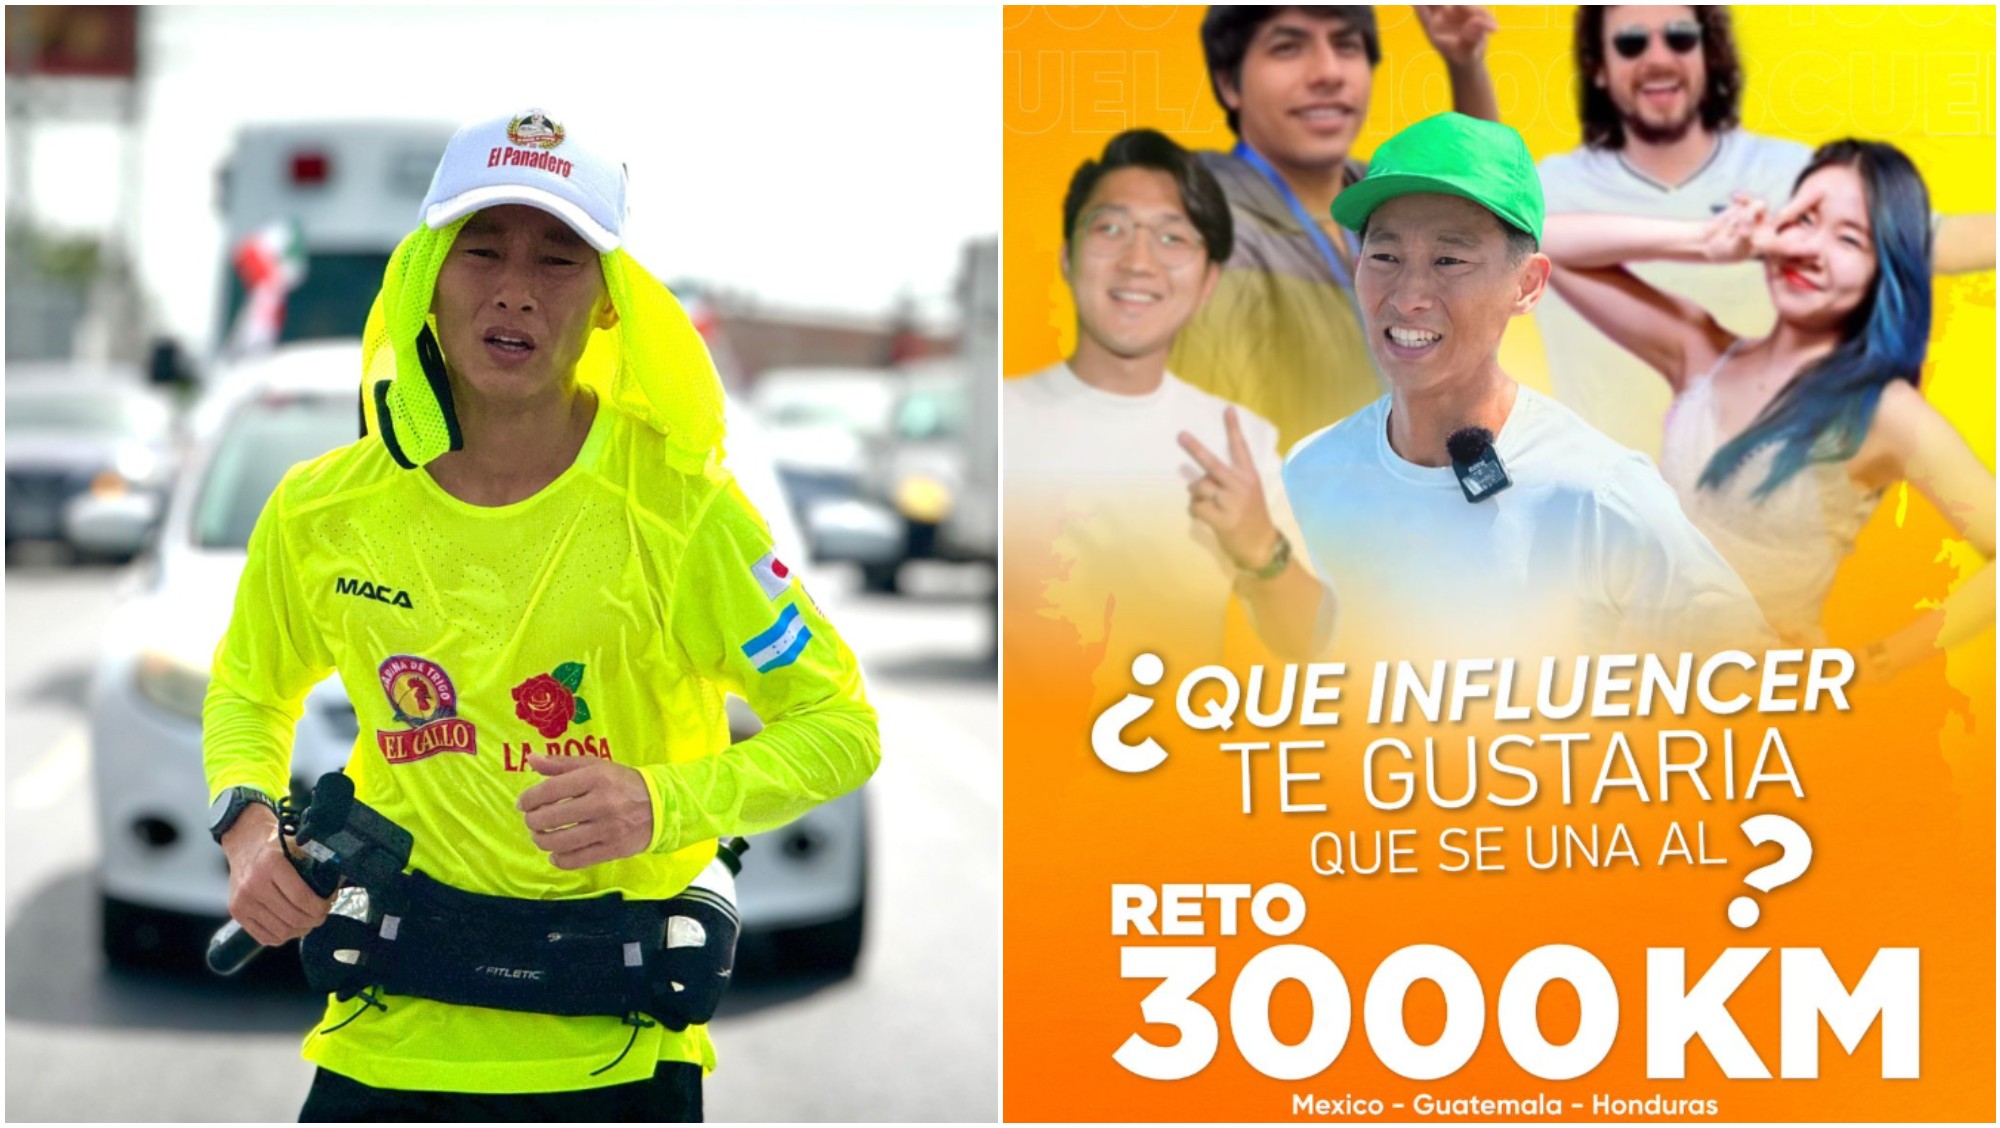 Shin Fujiayam invita a influencers a unirse a su carrera de 3,000 km